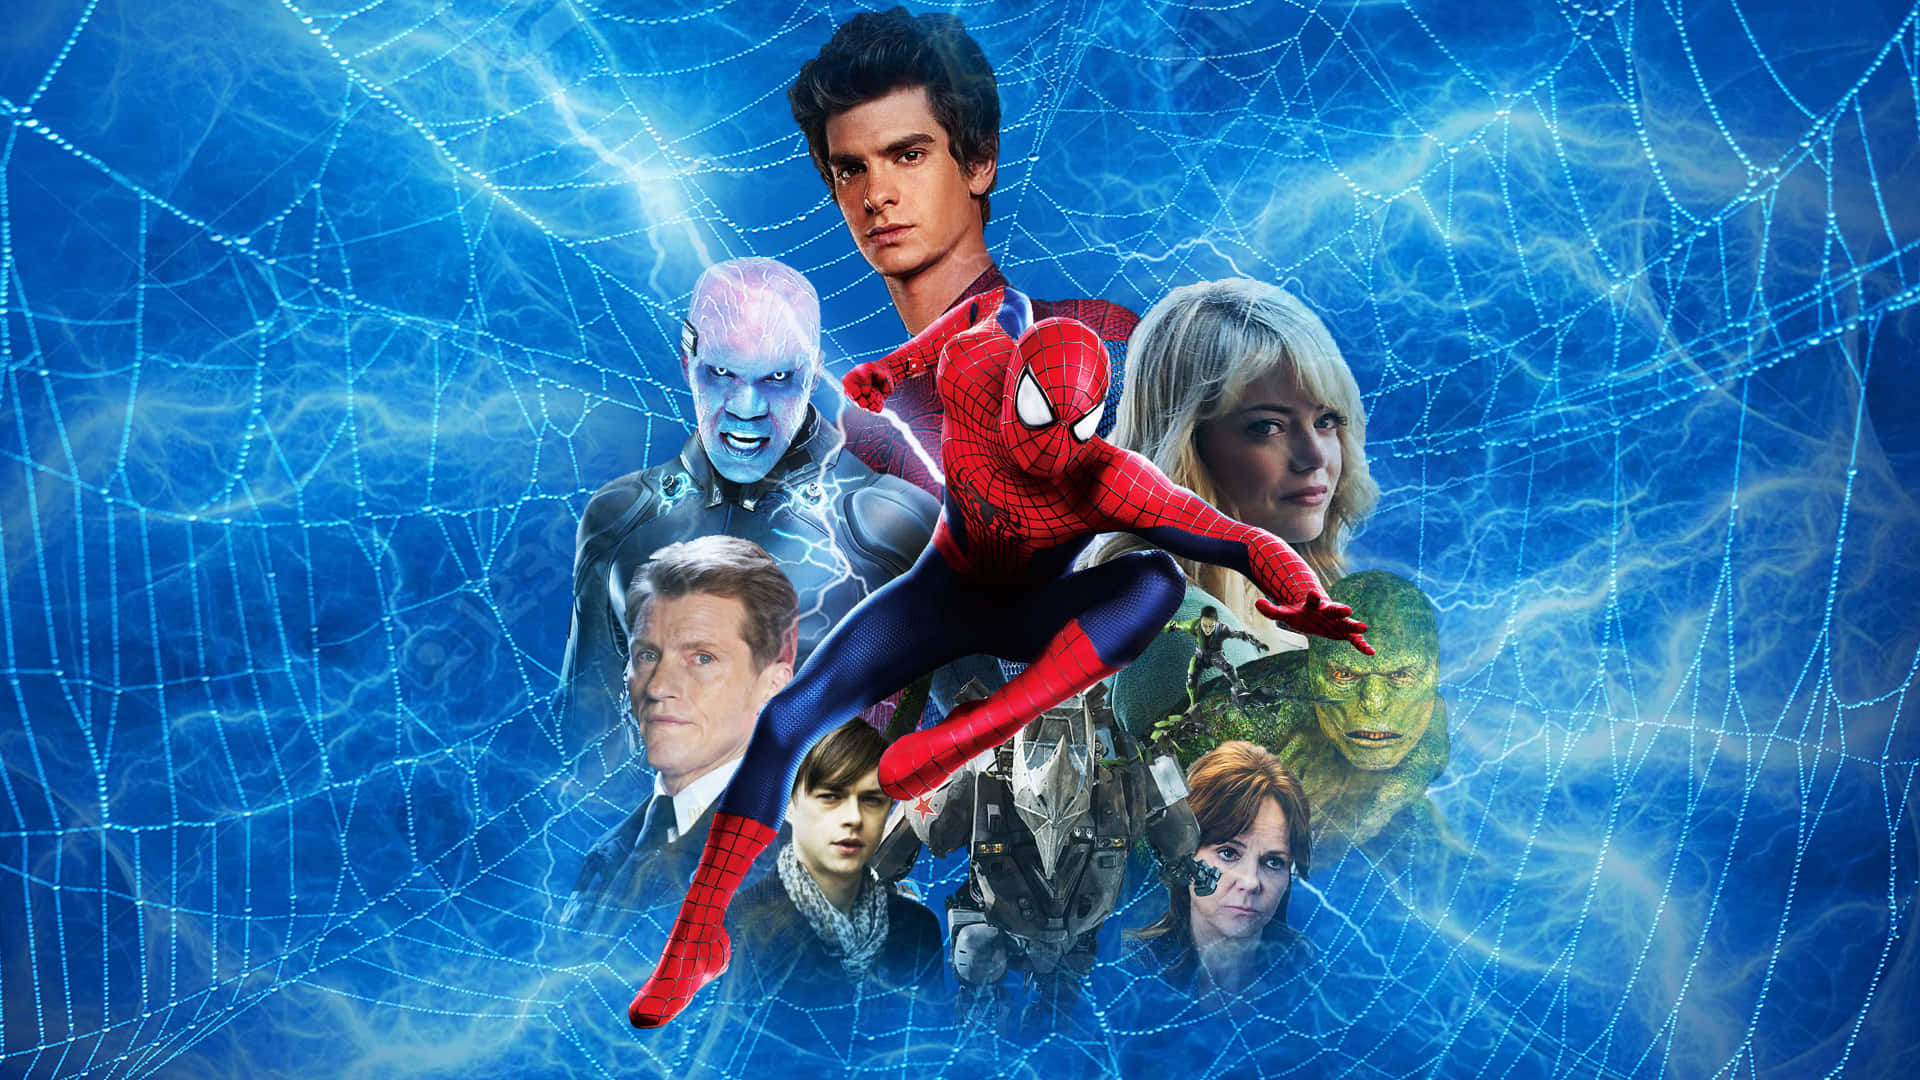 Preparese Para Salvar O Mundo Com Seus Poderes Do Spiderman!